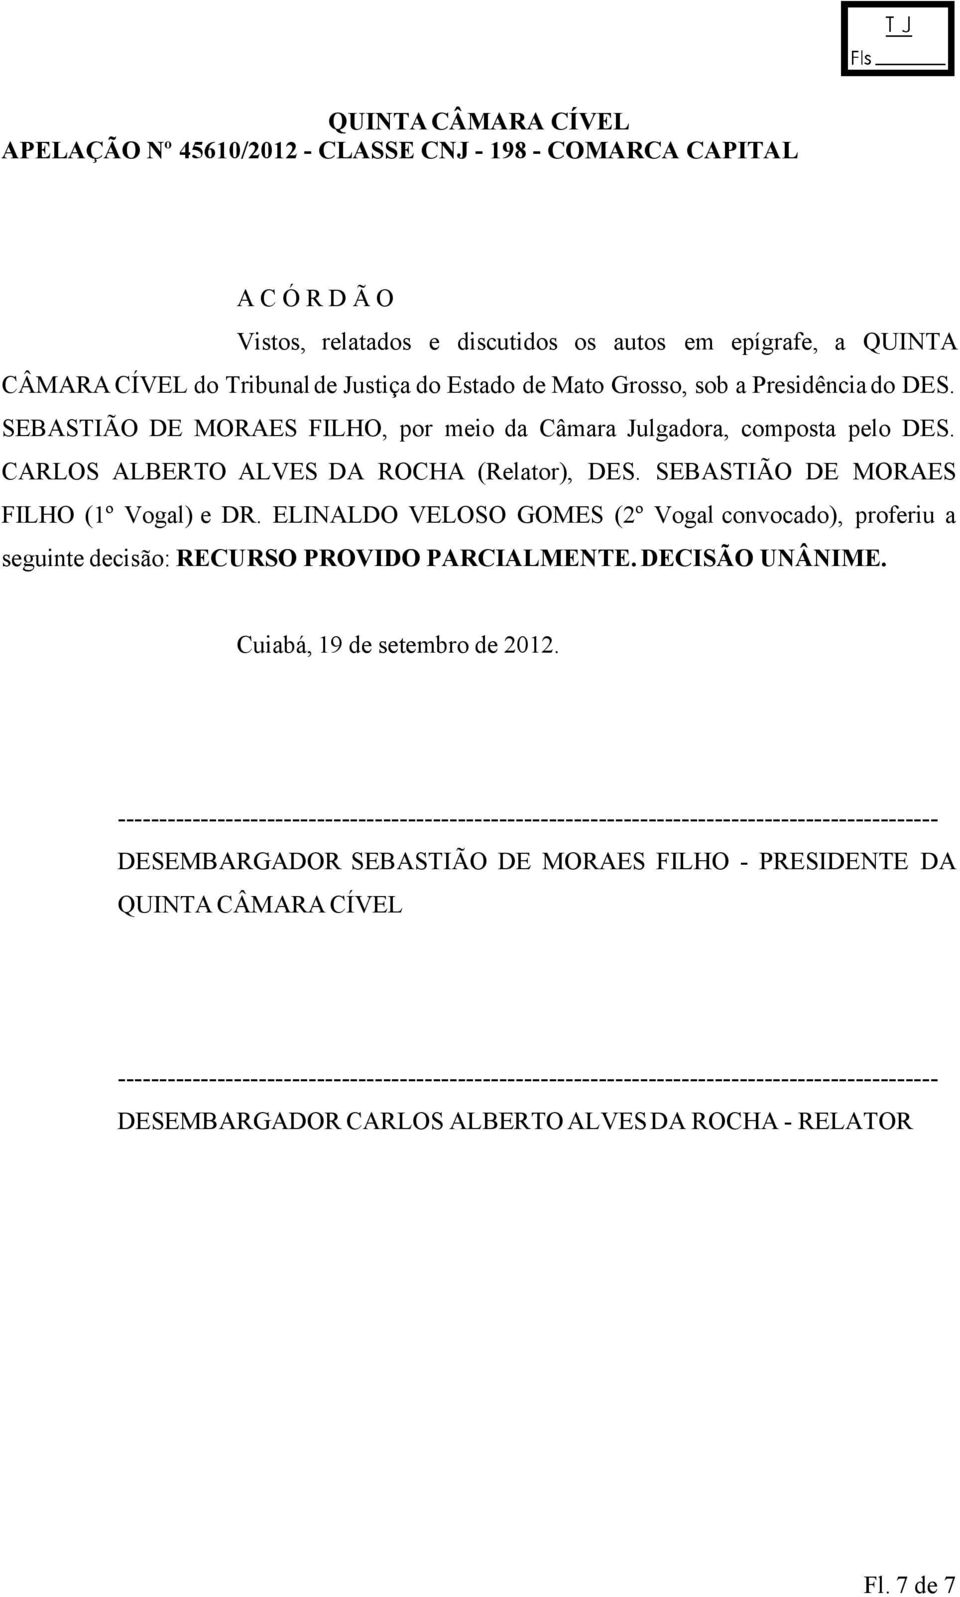 ELINALDO VELOSO GOMES (2º Vogal convocado), proferiu a seguinte decisão: RECURSO PROVIDO PARCIALMENTE. DECISÃO UNÂNIME. Cuiabá, 19 de setembro de 2012.